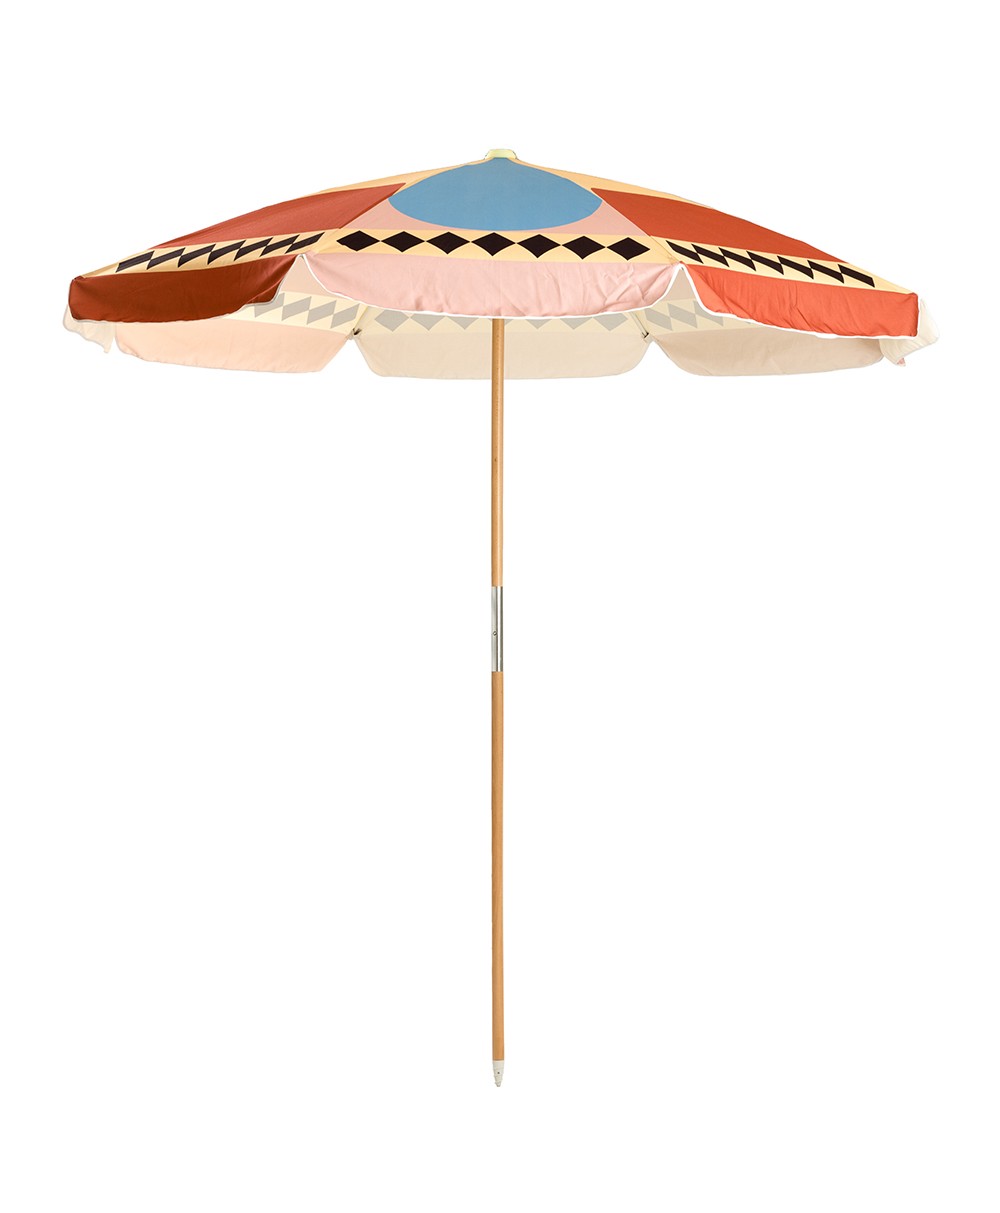 Der Sonnenschirm Amalfi Beach Umbrella  im Diamond Design aus der 2023 Sommer Kollektion von Business&Pleasure im RAUM concept store.